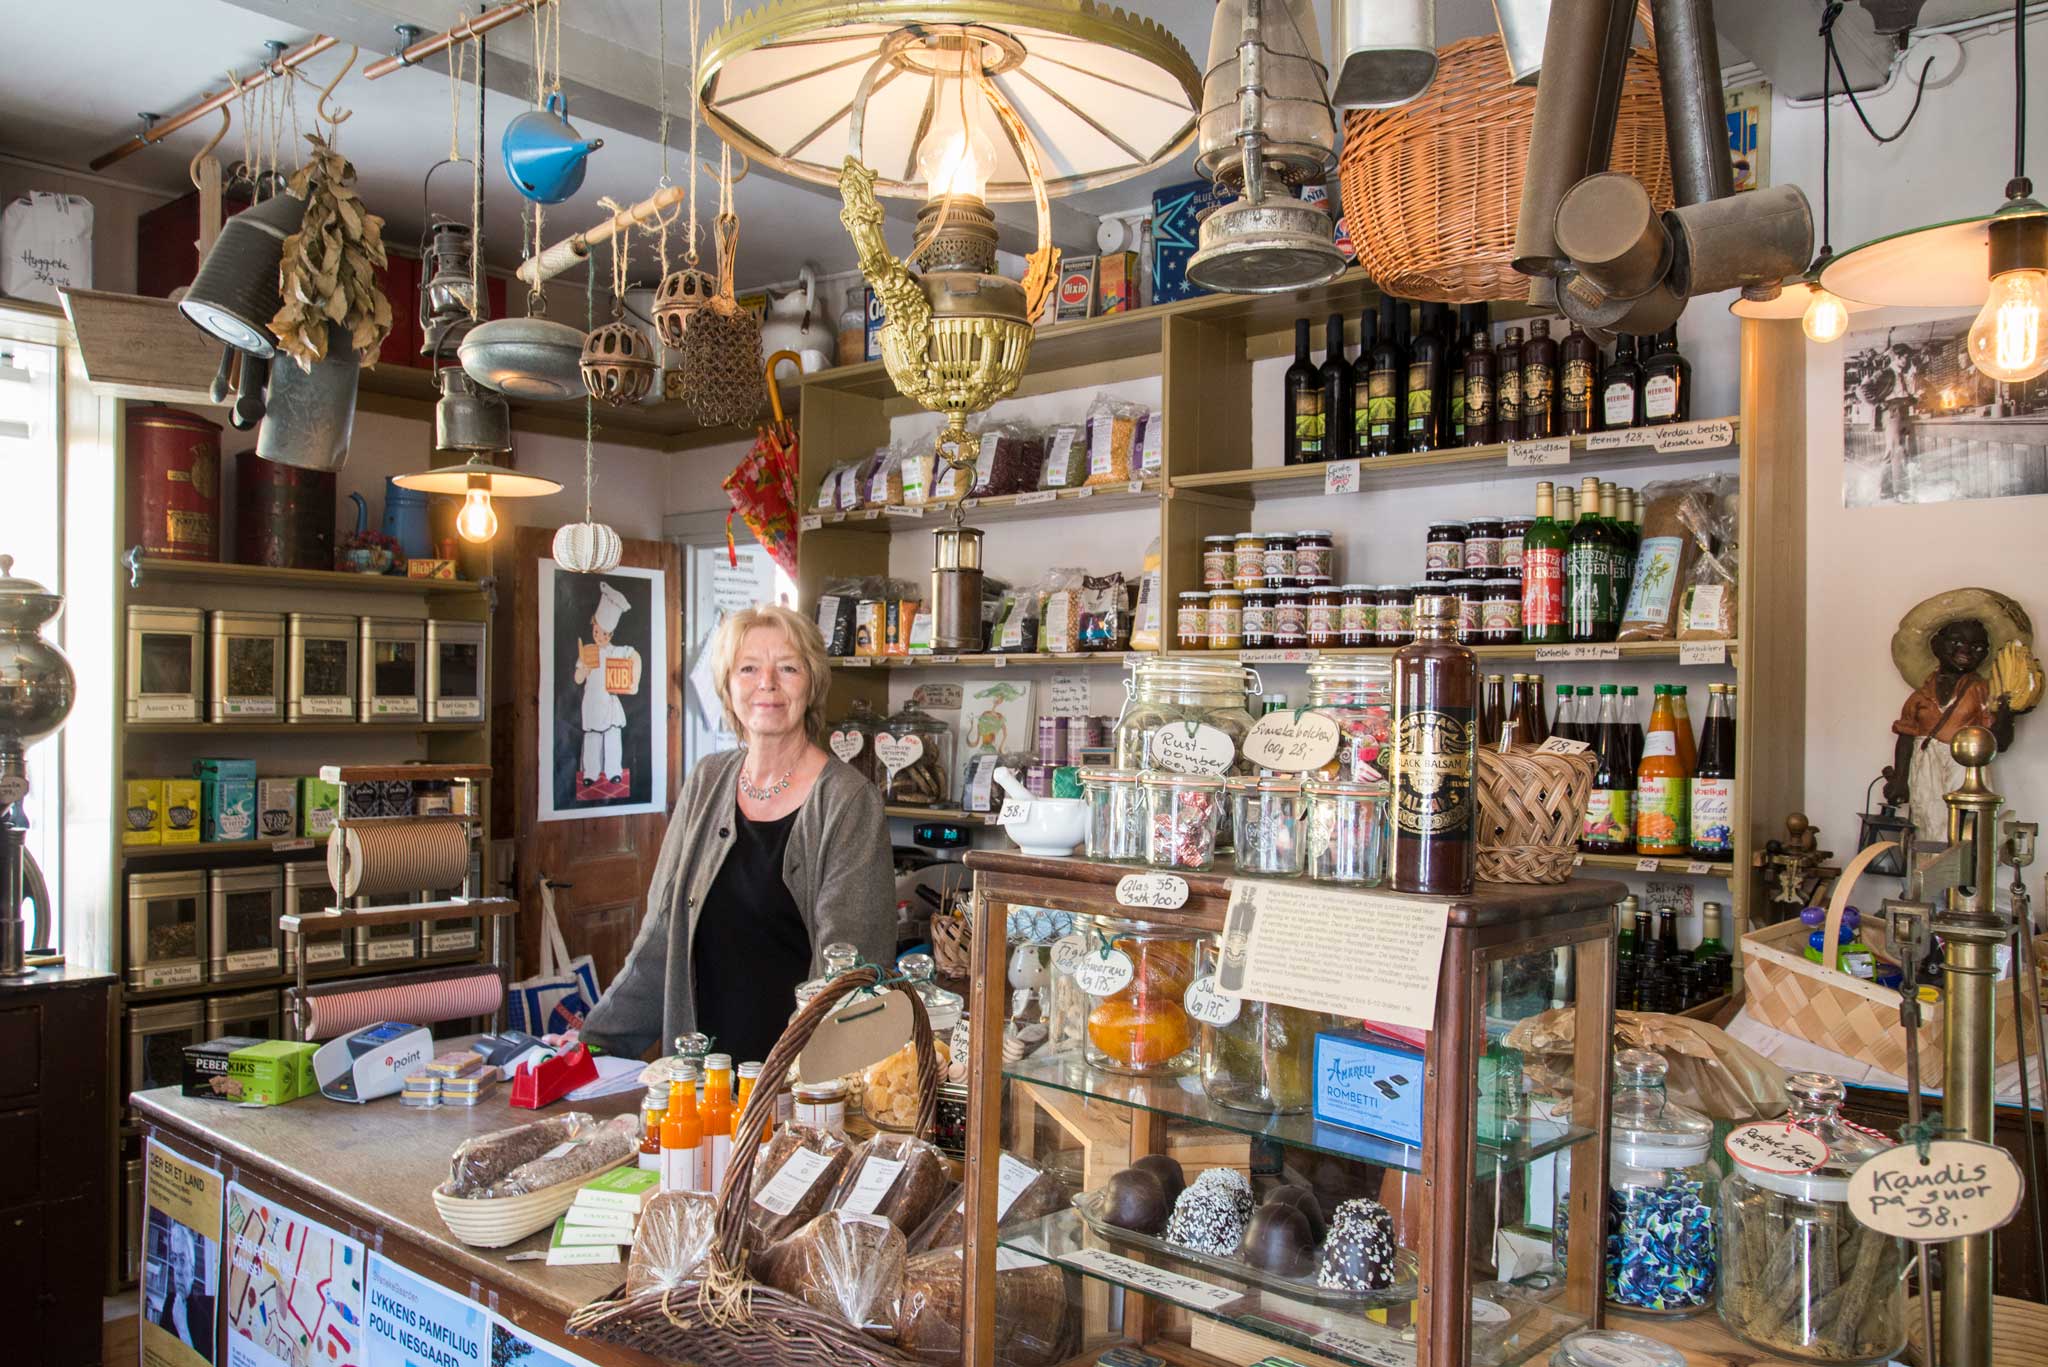 Svaneke er kåret til ”Danmarks Smukkeste Køpstad” Byen er full av små assorterte butikker med hyggelig betjening.